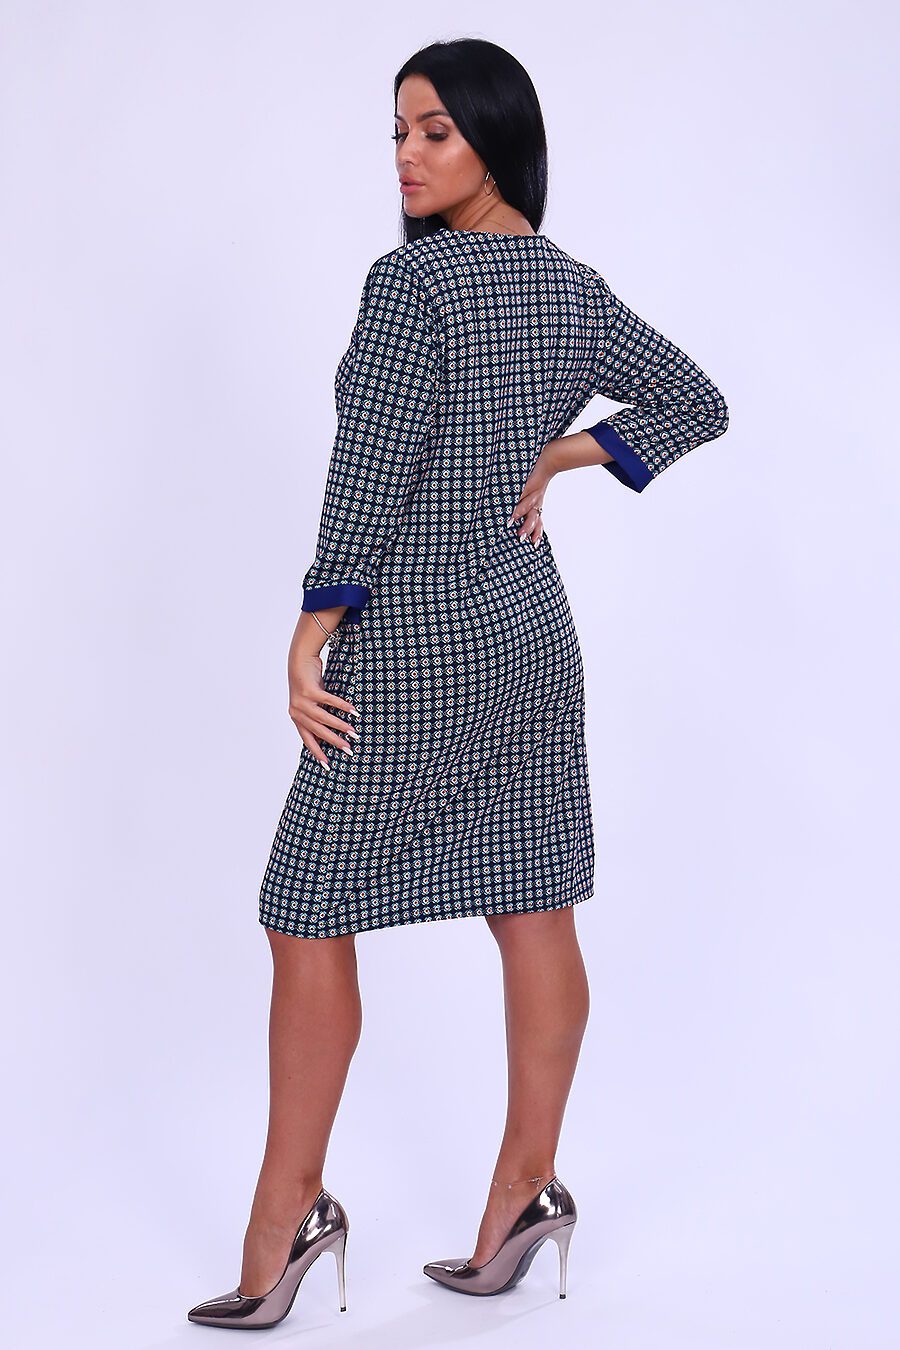 Платье 52198 для женщин НАТАЛИ 795915 купить оптом от производителя. Совместная покупка женской одежды в OptMoyo